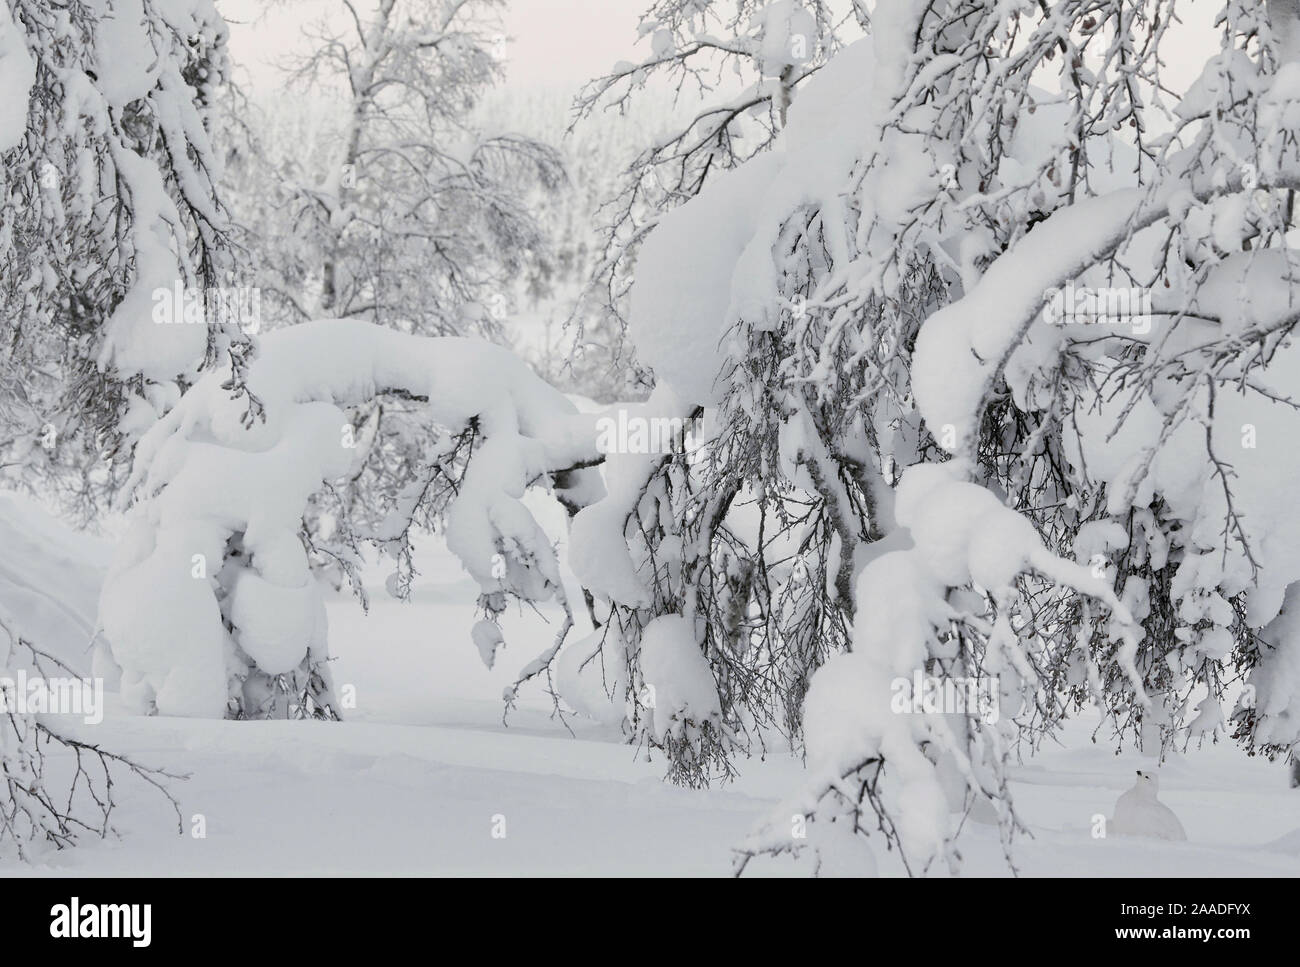 Lagopède des saules (Lagopus lagopus) extrêmement bien camouflée sous la neige laden arbre, Inari Kiilopaa Finlande Janvier félicité dans la catégorie des oiseaux de l'Asferico 2017 Concours de photographie. Banque D'Images